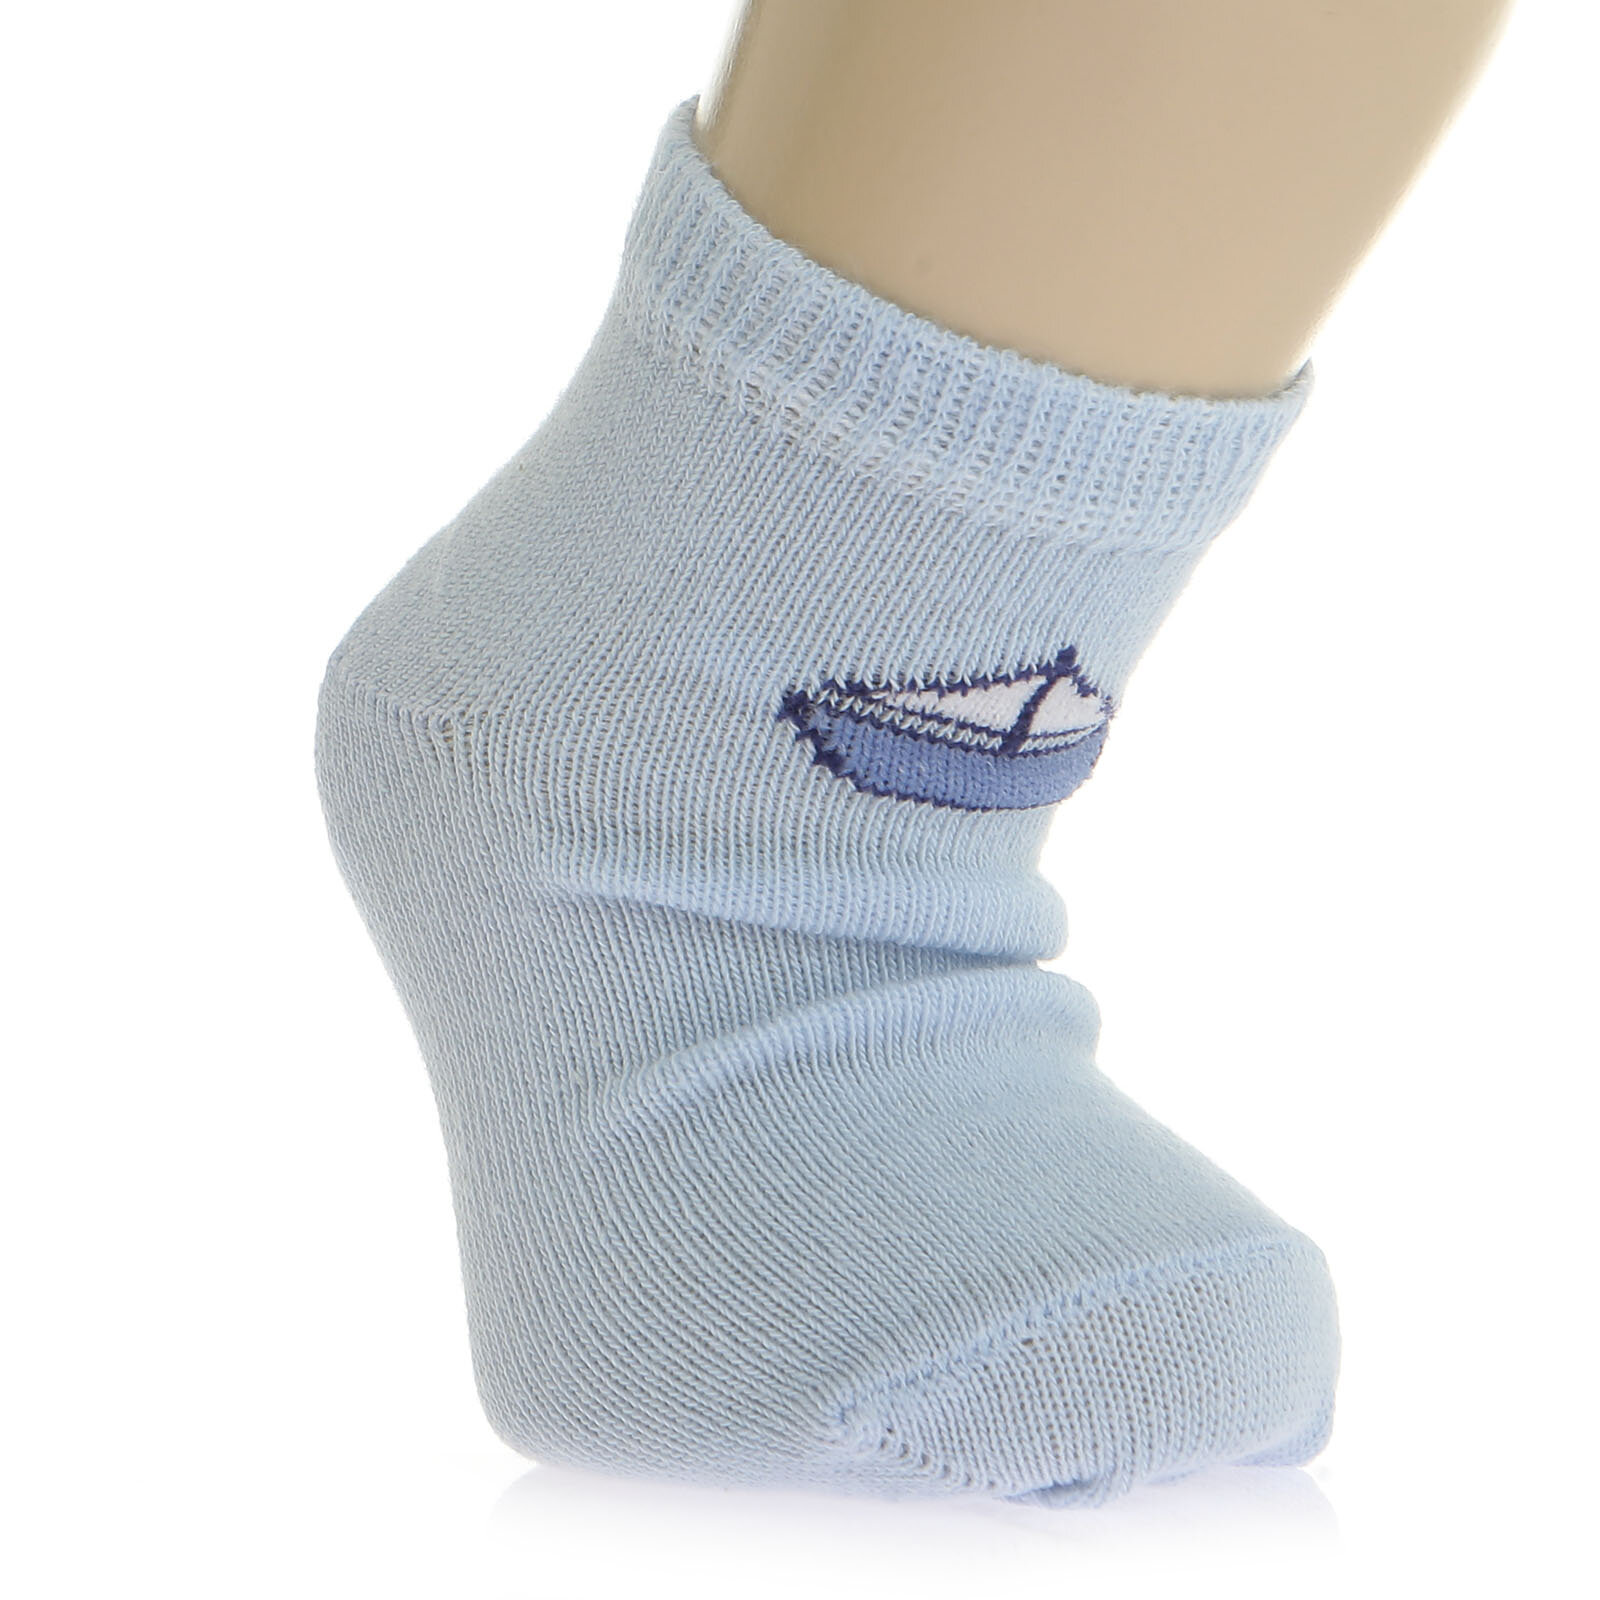 Gemi Balık Desenli 4'lü Soket Çorap 4lü Soket Çorap Erkek Bebek